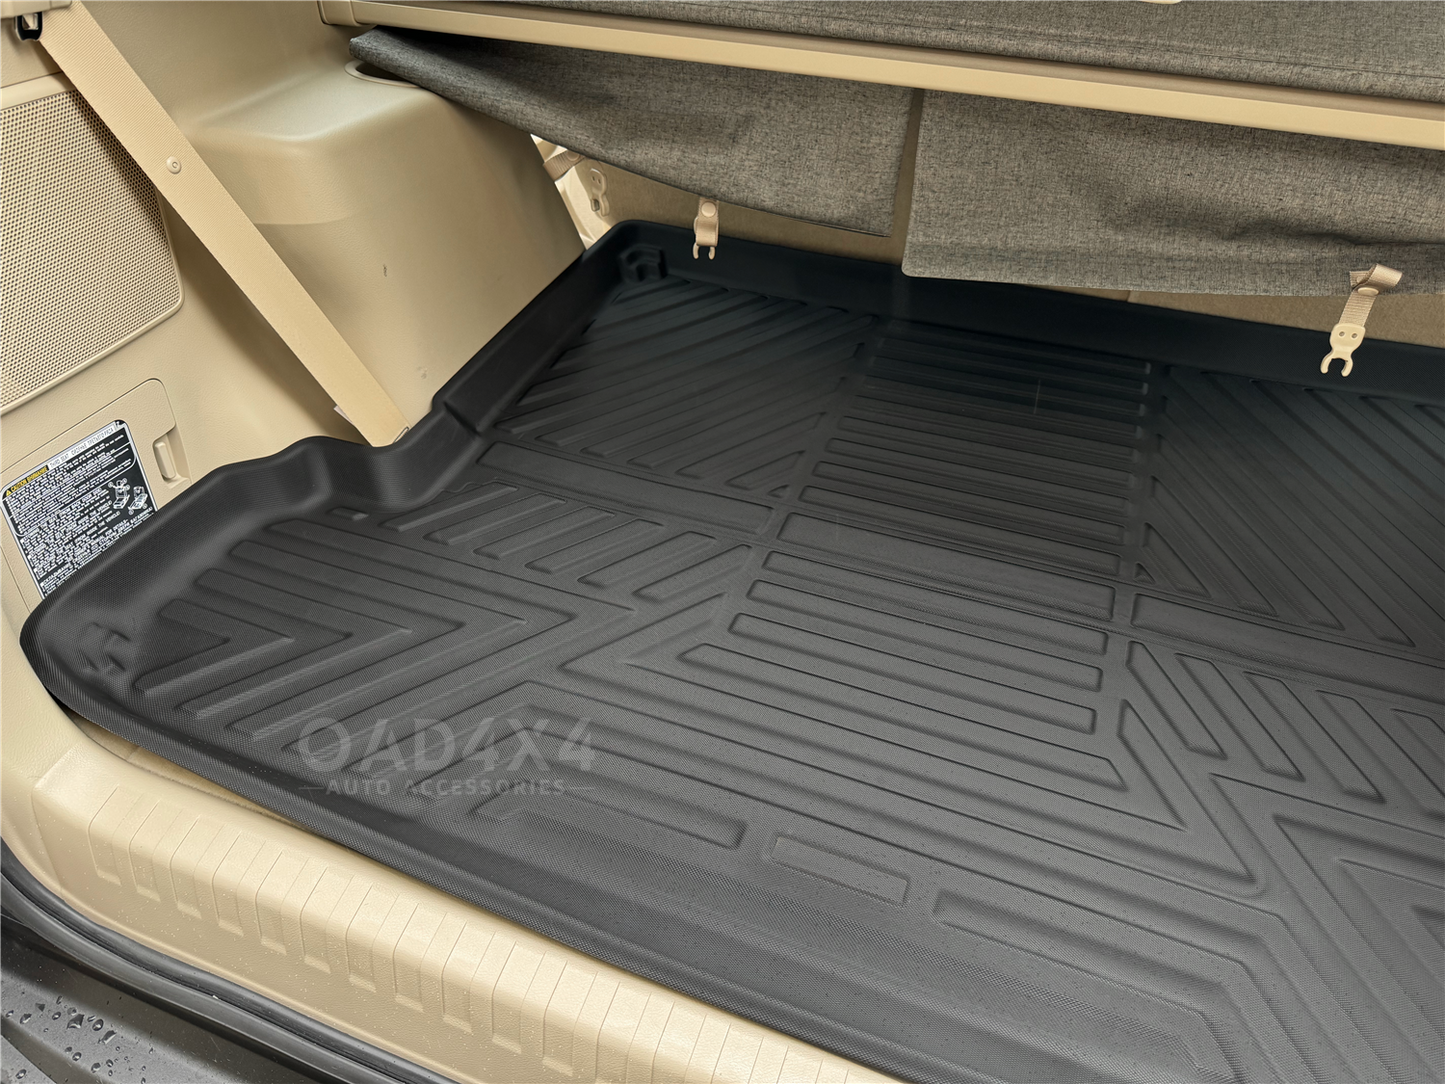 3D TPE Floor Mats & Cargo Mat for Toyota Prado 150 / Prado150 2009-Onwards Tailored Door Sill Covered Floor Mat Liner + Boot Trunk Mat